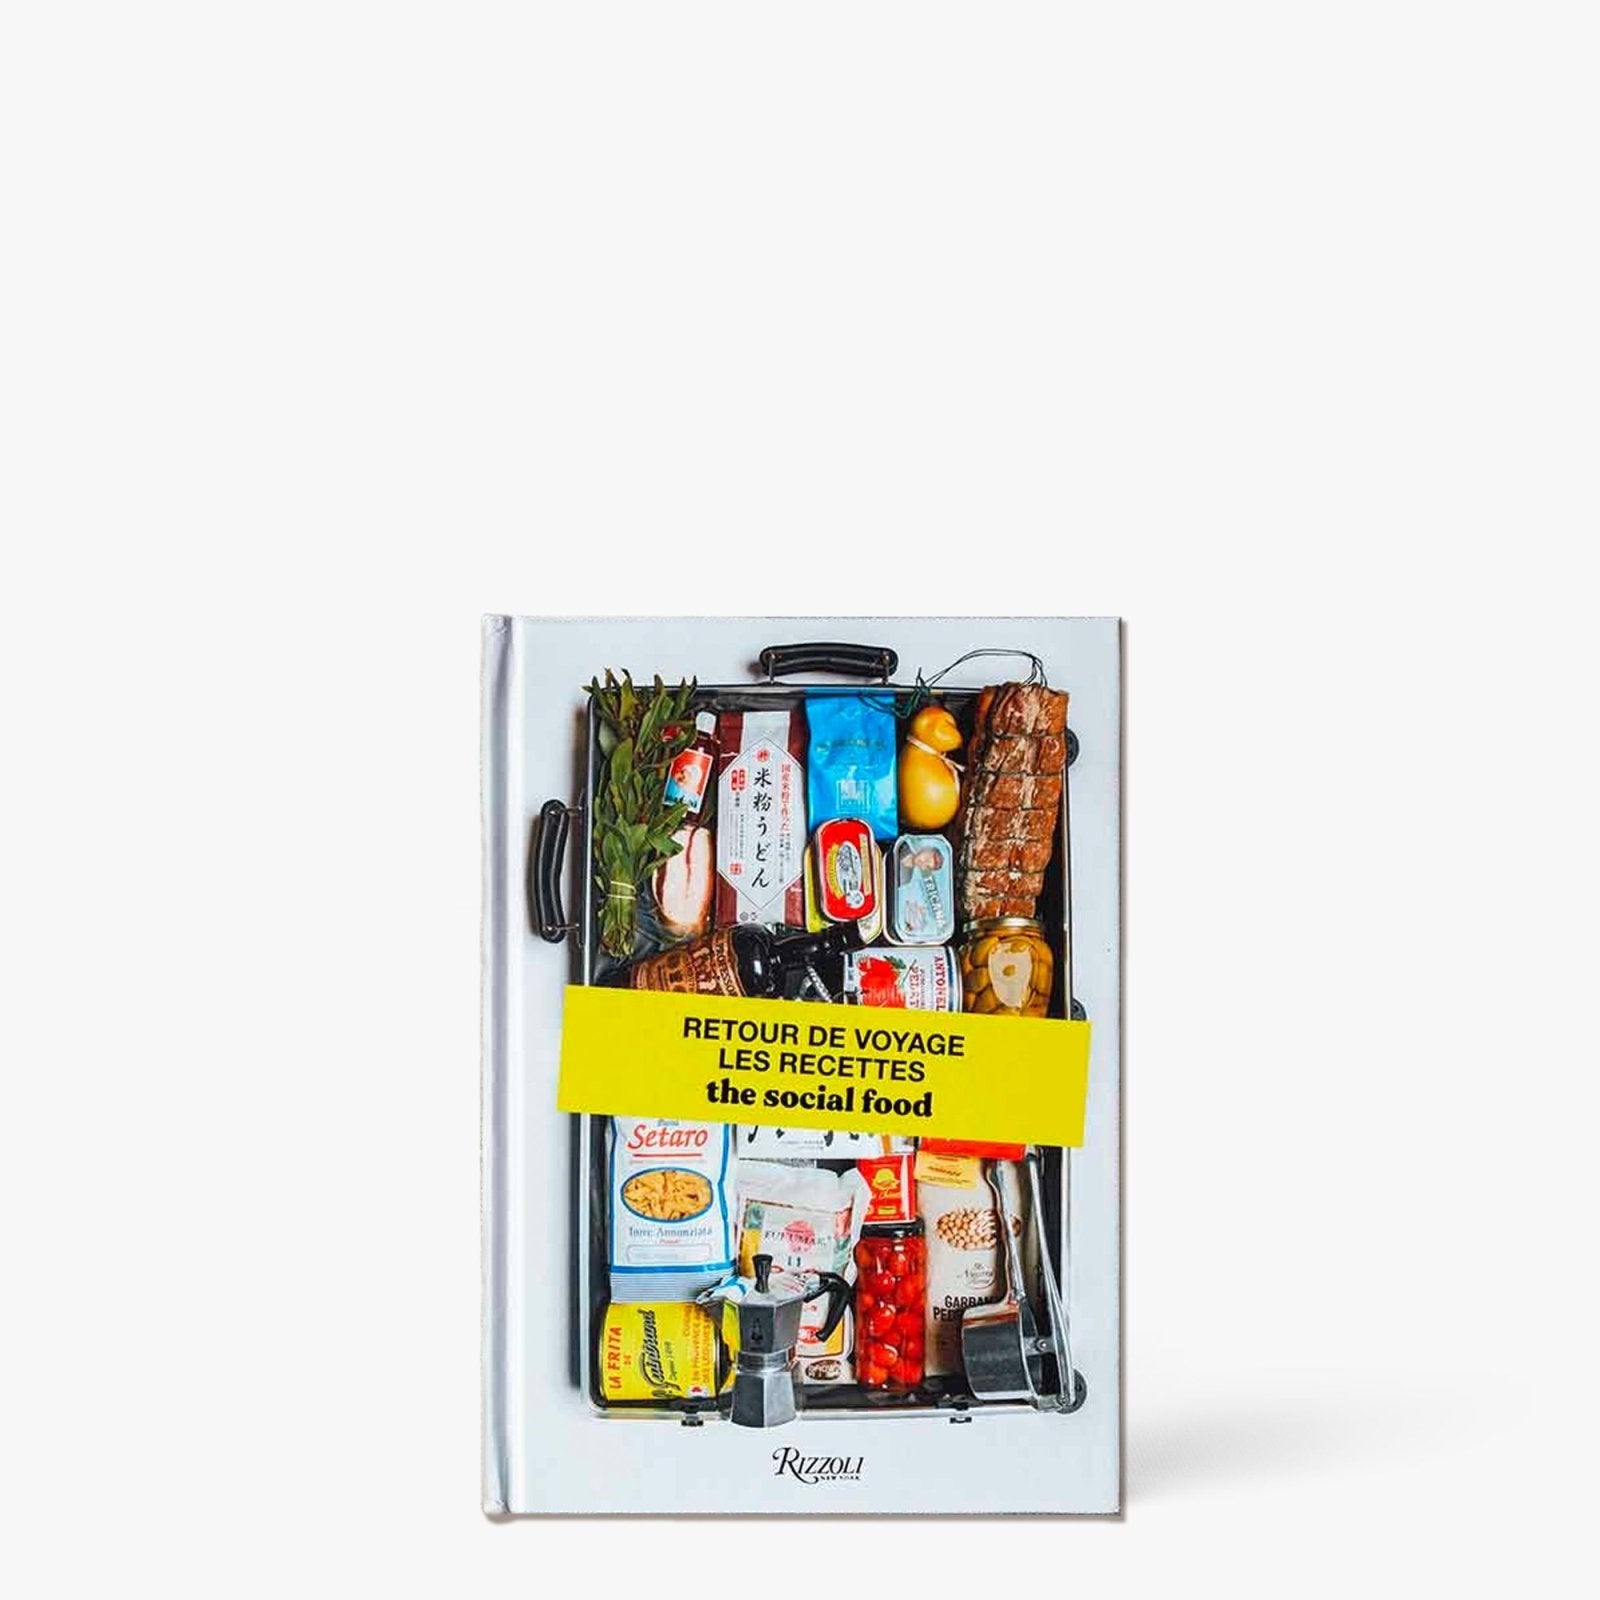 Retour de voyages, les recettes. The social food - Rizzoli International publication - iRASSHAi